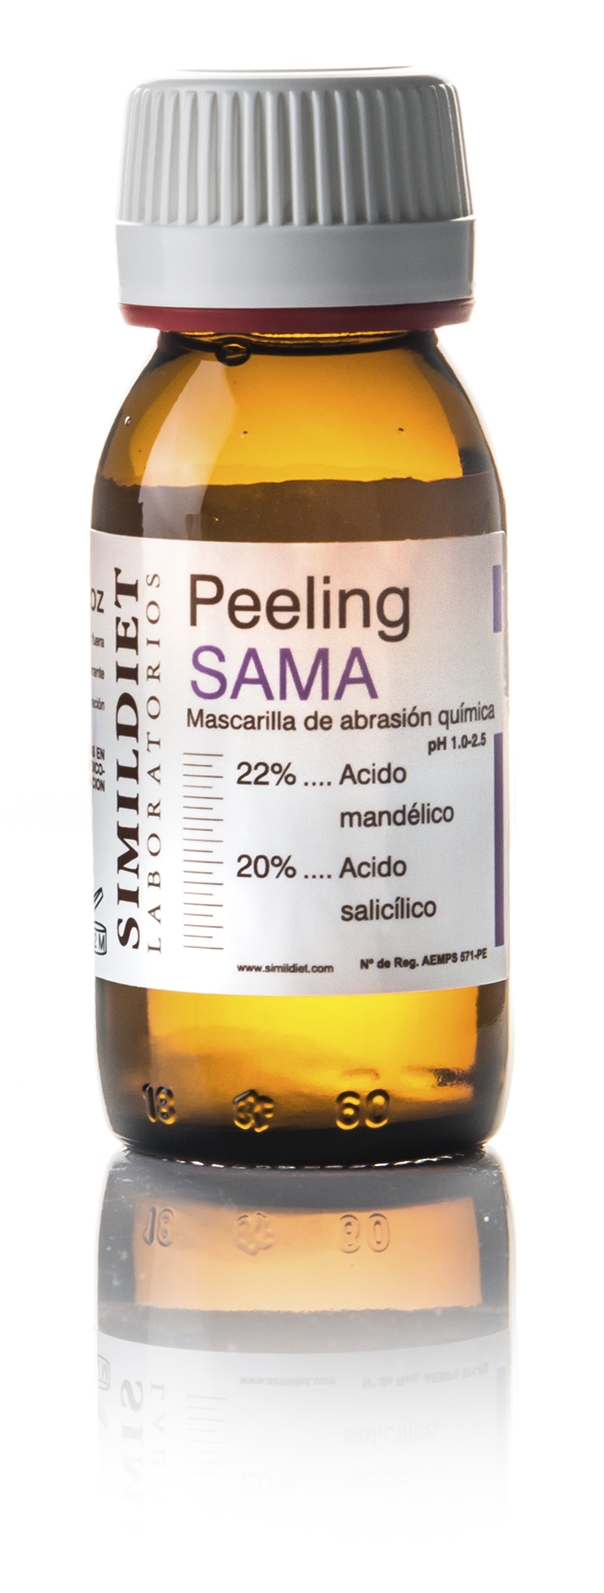 Peeling-SAMA